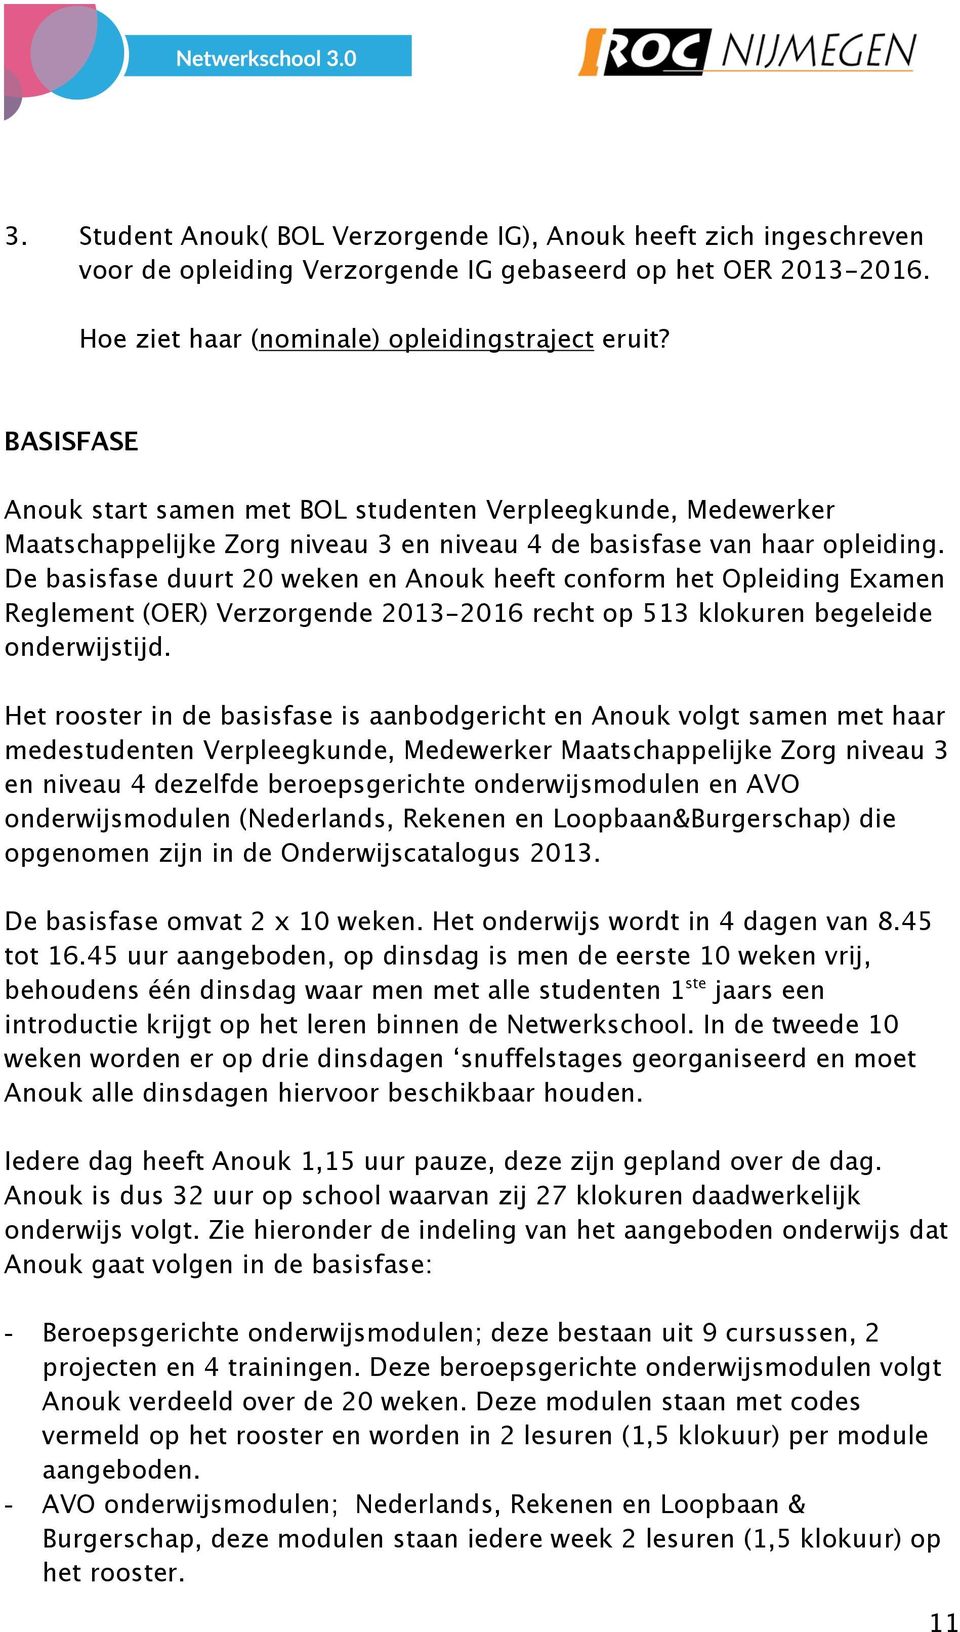 De basisfase duurt 20 weken en Anouk heeft conform het Opleiding Examen Reglement (OER) Verzorgende 2013-2016 recht op 513 klokuren begeleide onderwijstijd.